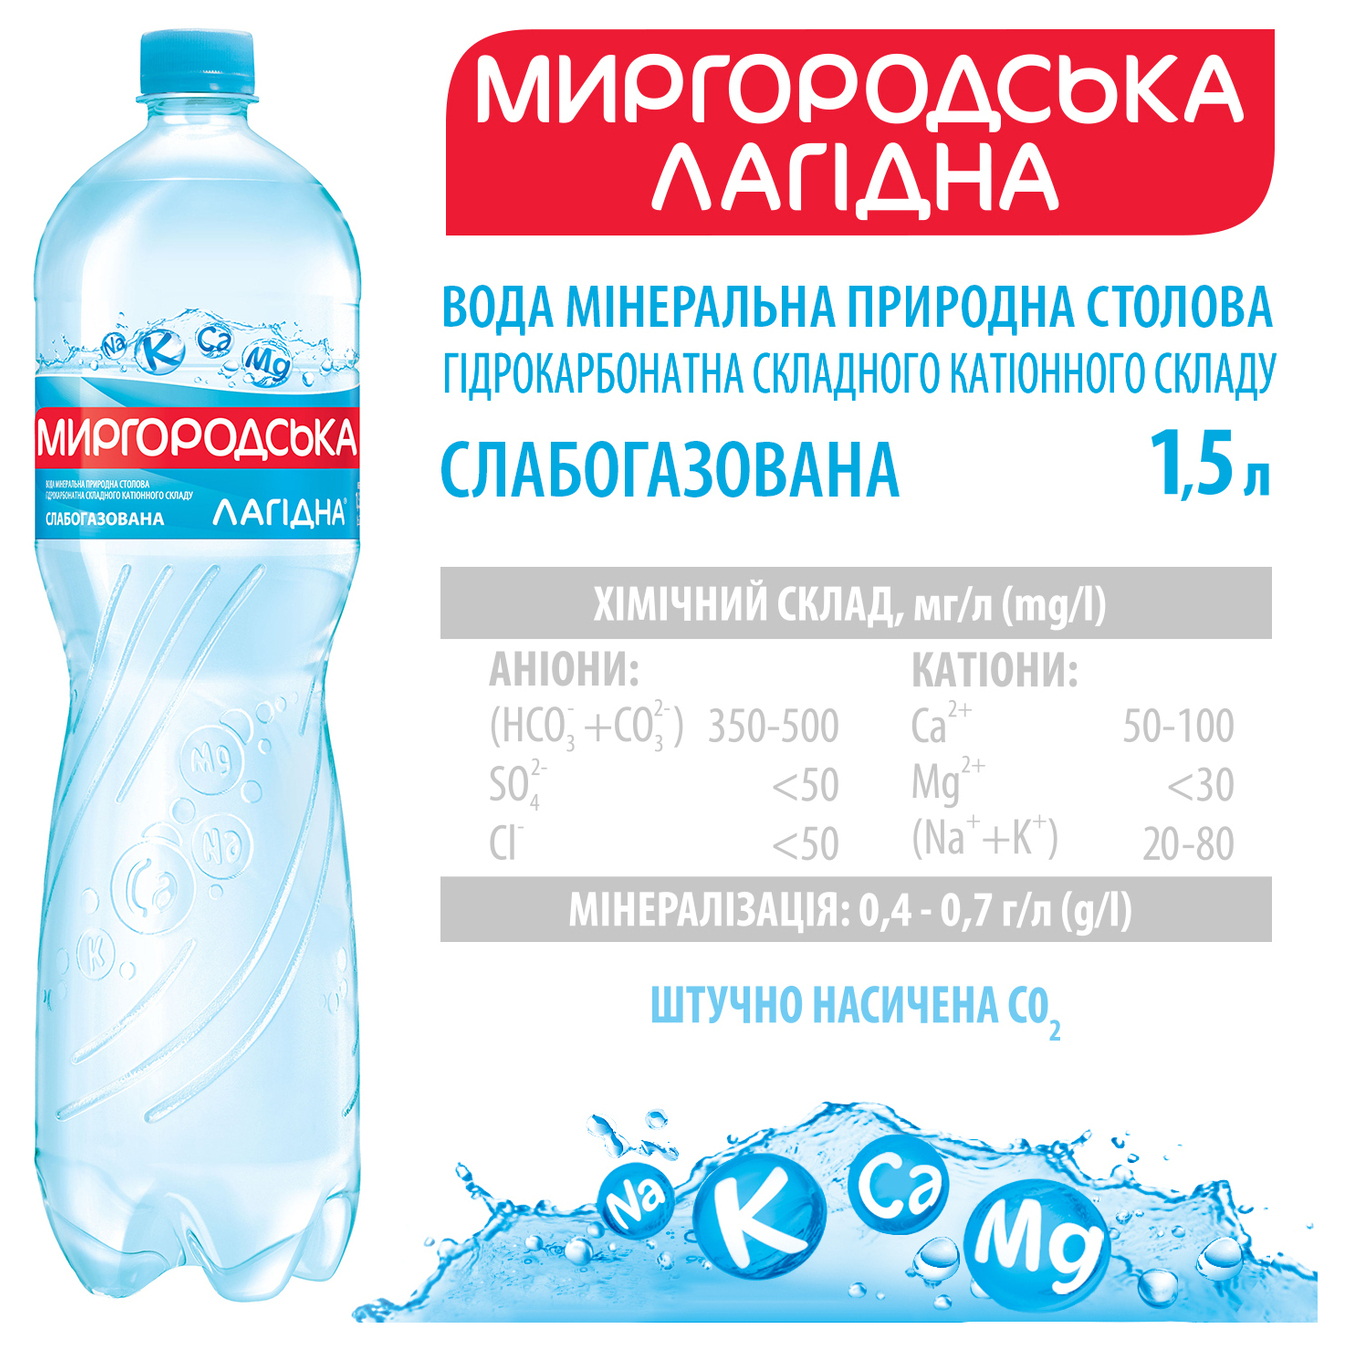 Вода минеральная вода Миргородская Лагидна слабогазированная 1,5л 4